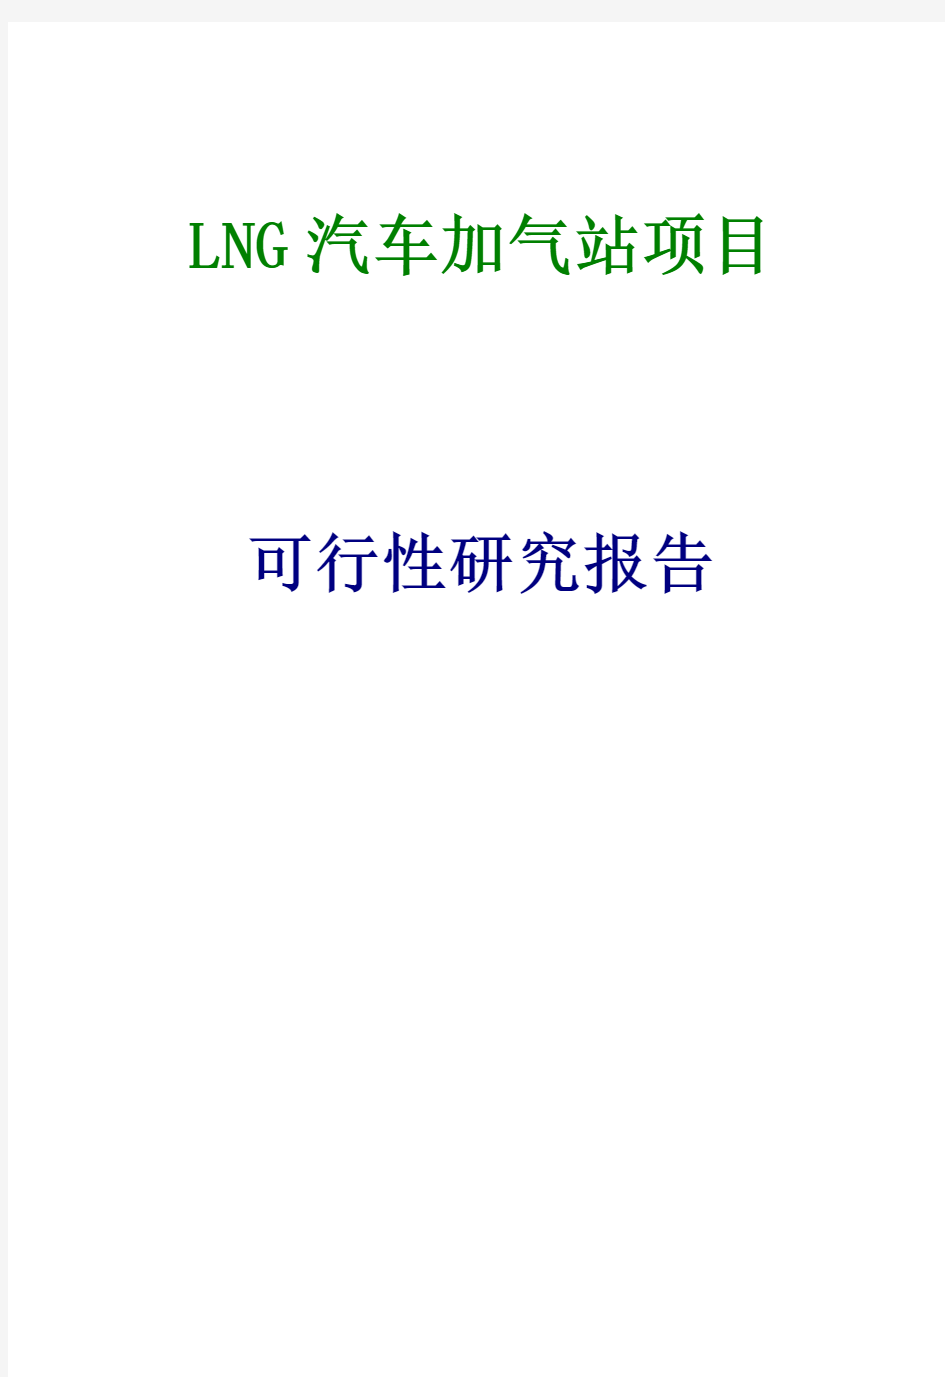 LNG汽车加气站项目可行性研究报告